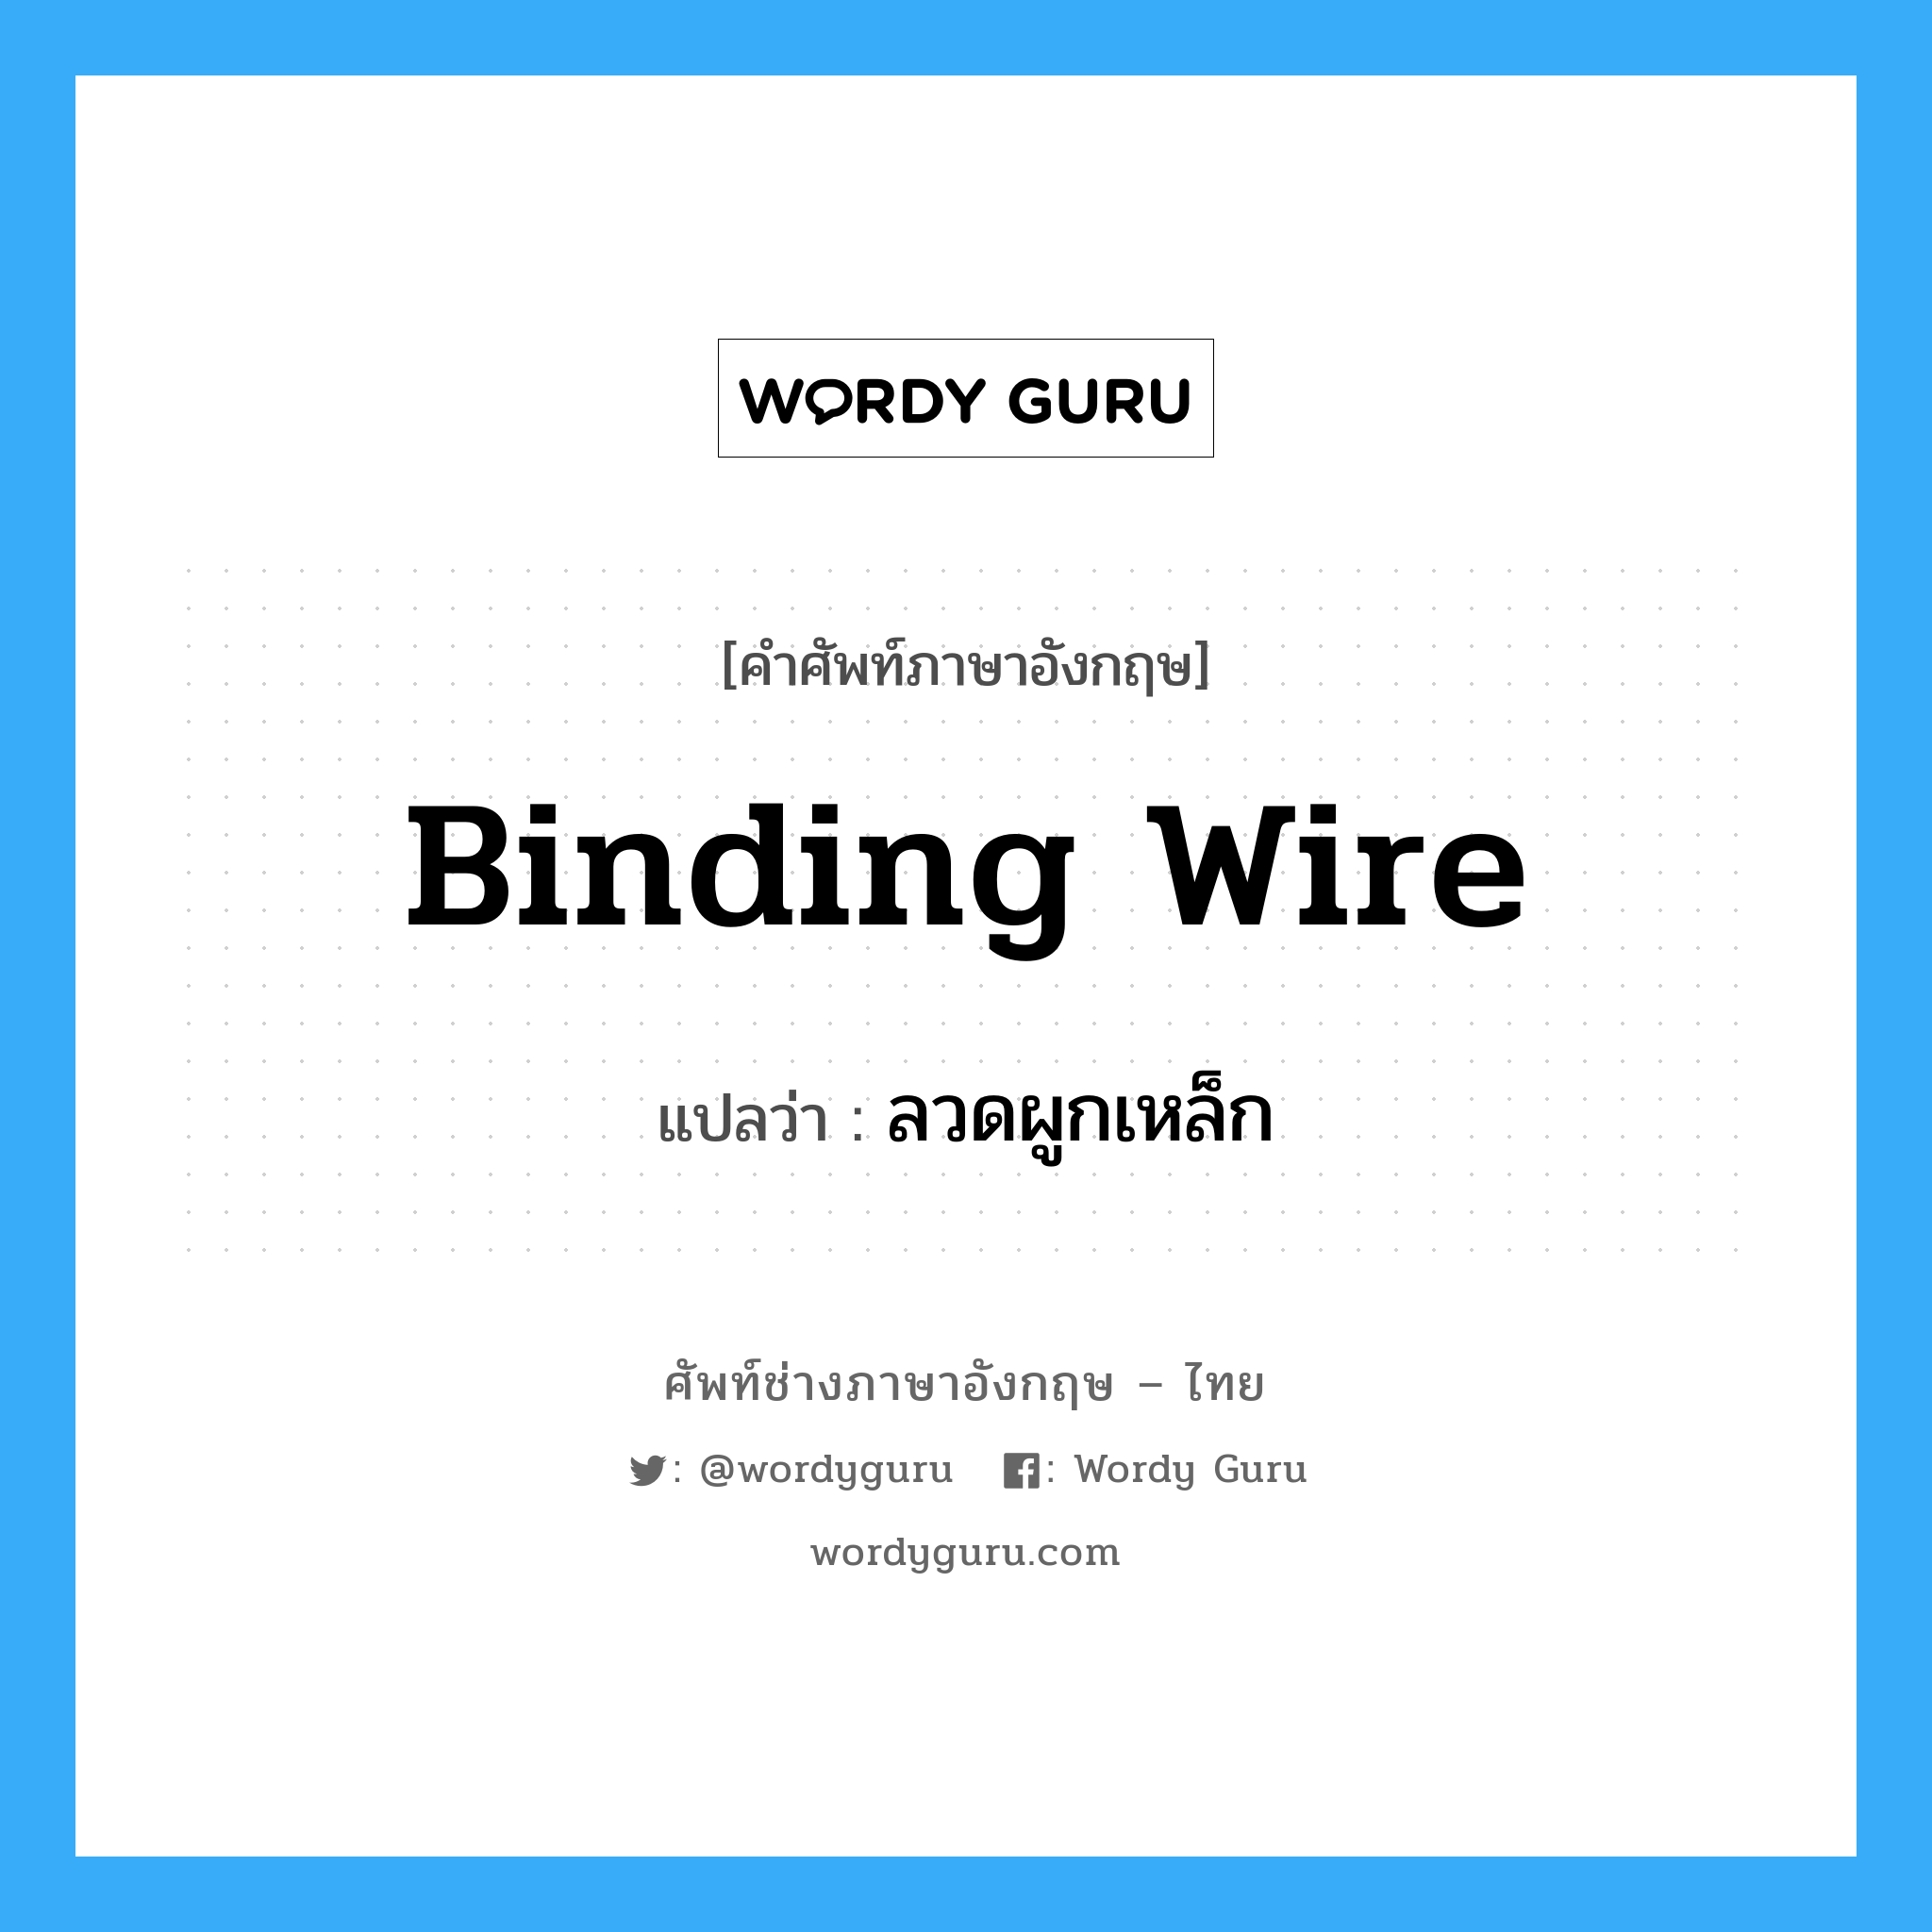 ลวดผูกเหล็ก ภาษาอังกฤษ?, คำศัพท์ช่างภาษาอังกฤษ - ไทย ลวดผูกเหล็ก คำศัพท์ภาษาอังกฤษ ลวดผูกเหล็ก แปลว่า binding wire